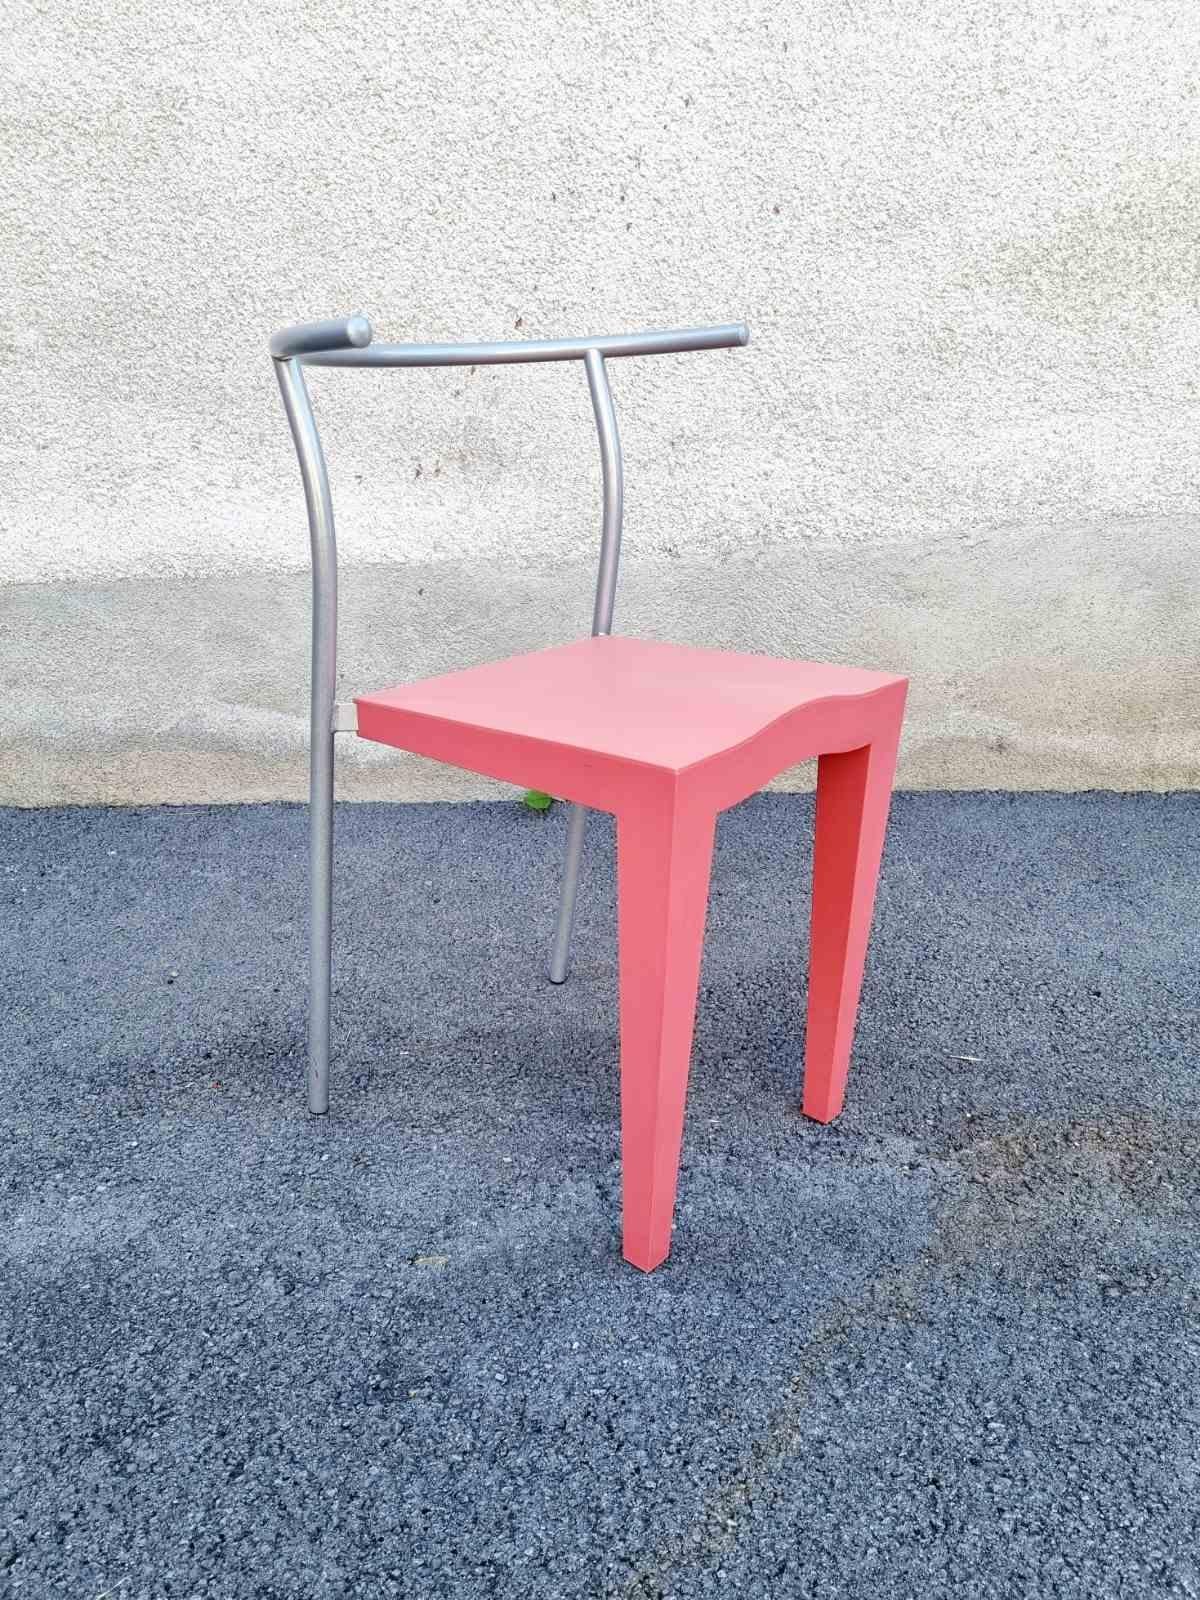 Sehr RARE Postmoderne Kunststoff Stuhl, Modell Dr Glob, wurde von Philippe Starck für Kartell Italien in den 80er Jahren entworfen; genau 1986.

Dieser Retro-Stuhl aus Kunststoff ist in einem sehr guten Vintage-Zustand, mit geringen Gebrauchsspuren.